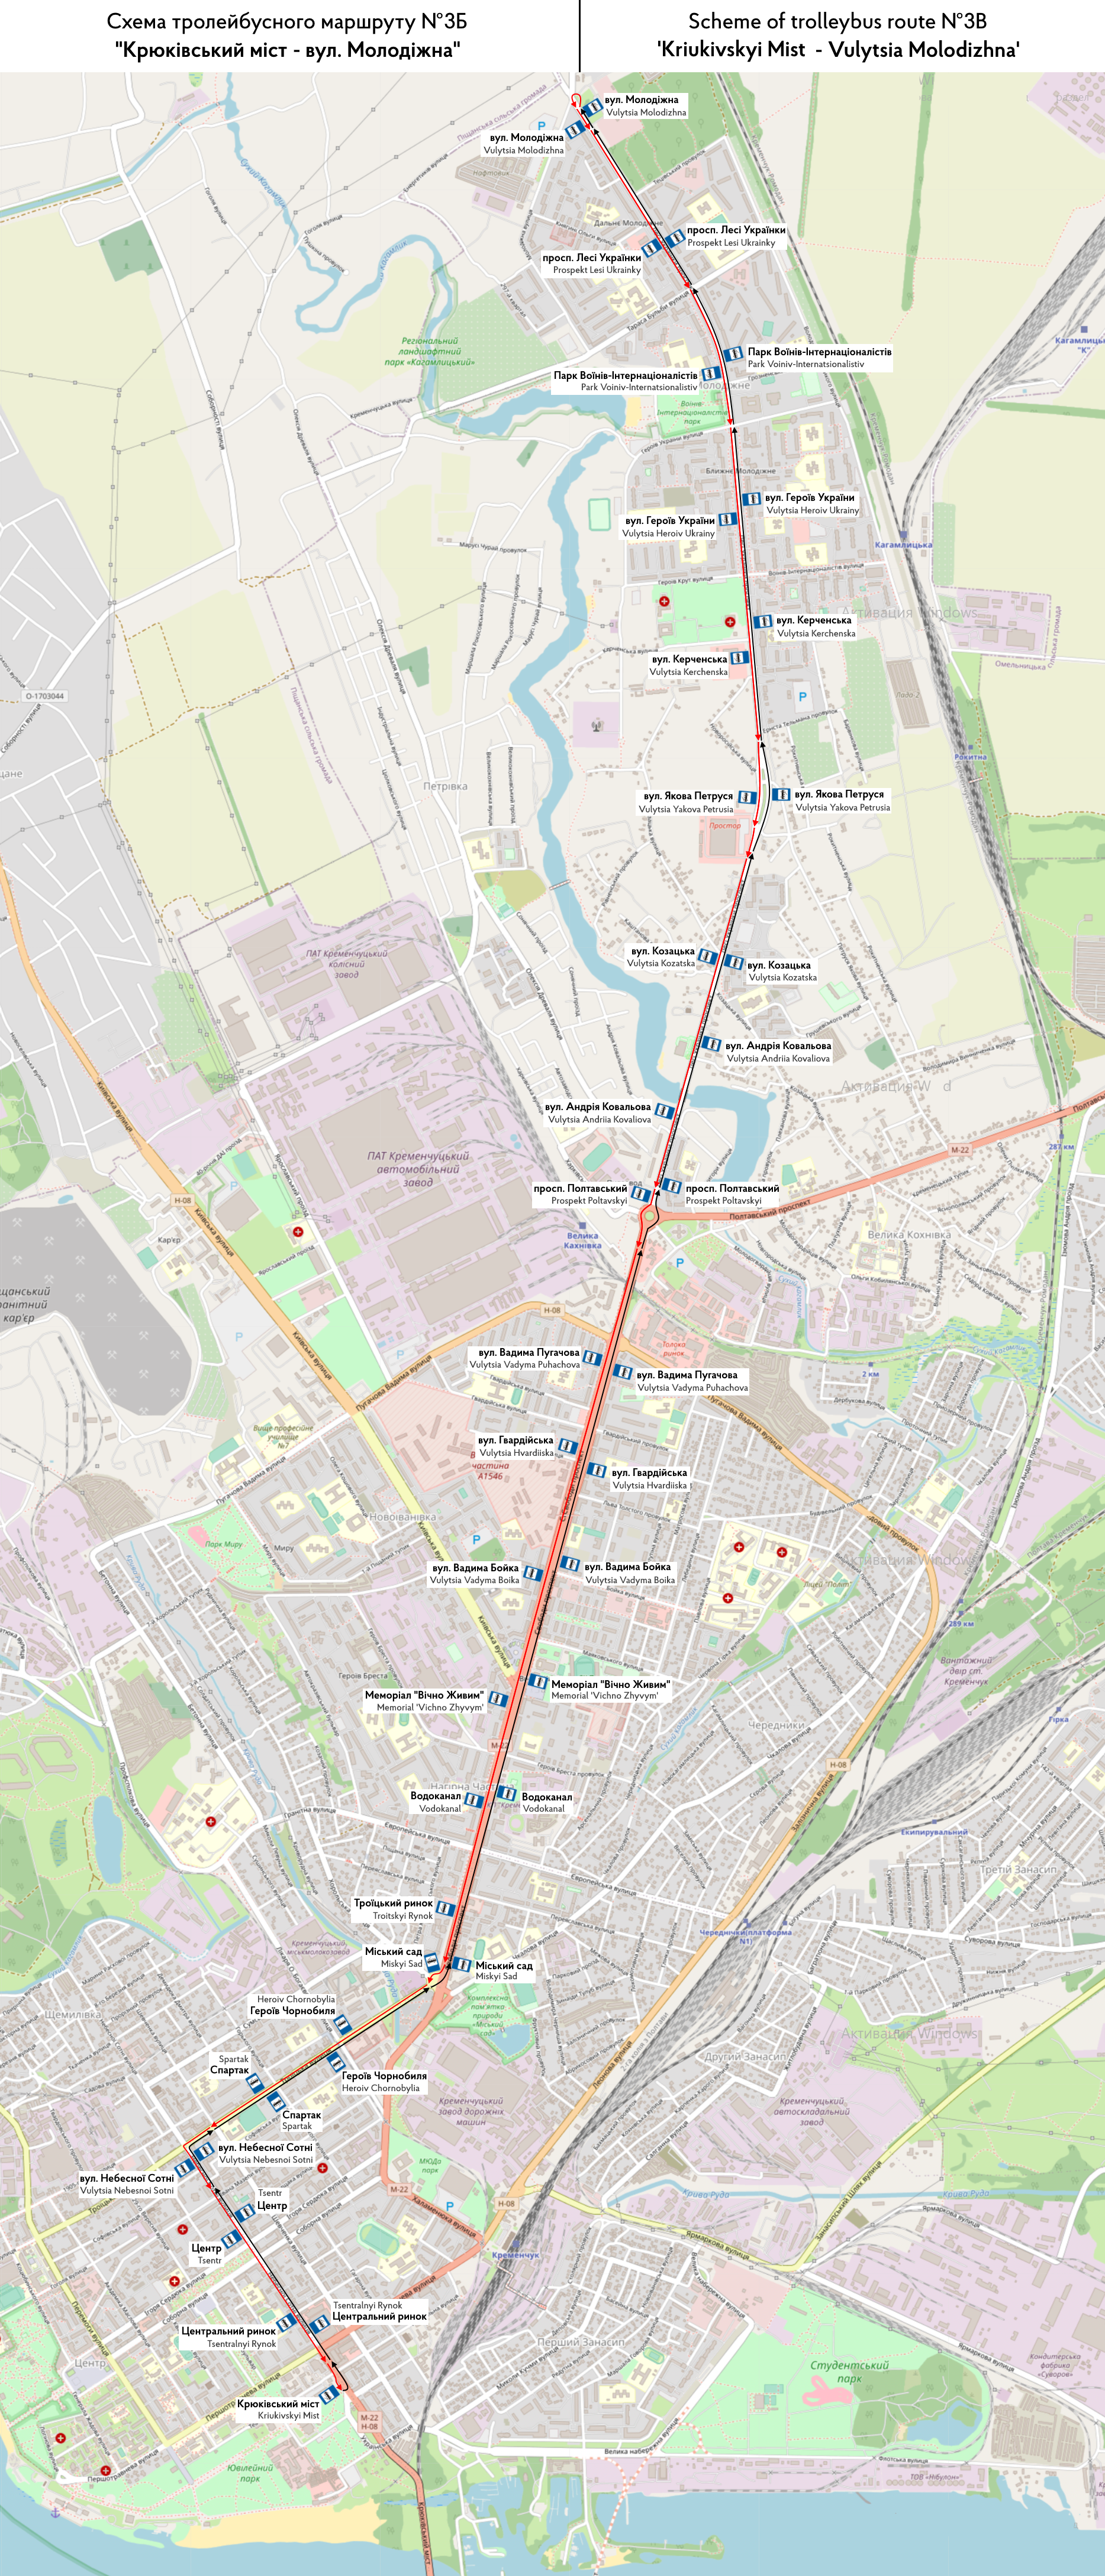 Карты, созданные с использованием OpenStreetMap; Кременчук — Схемы отдельных маршрутов